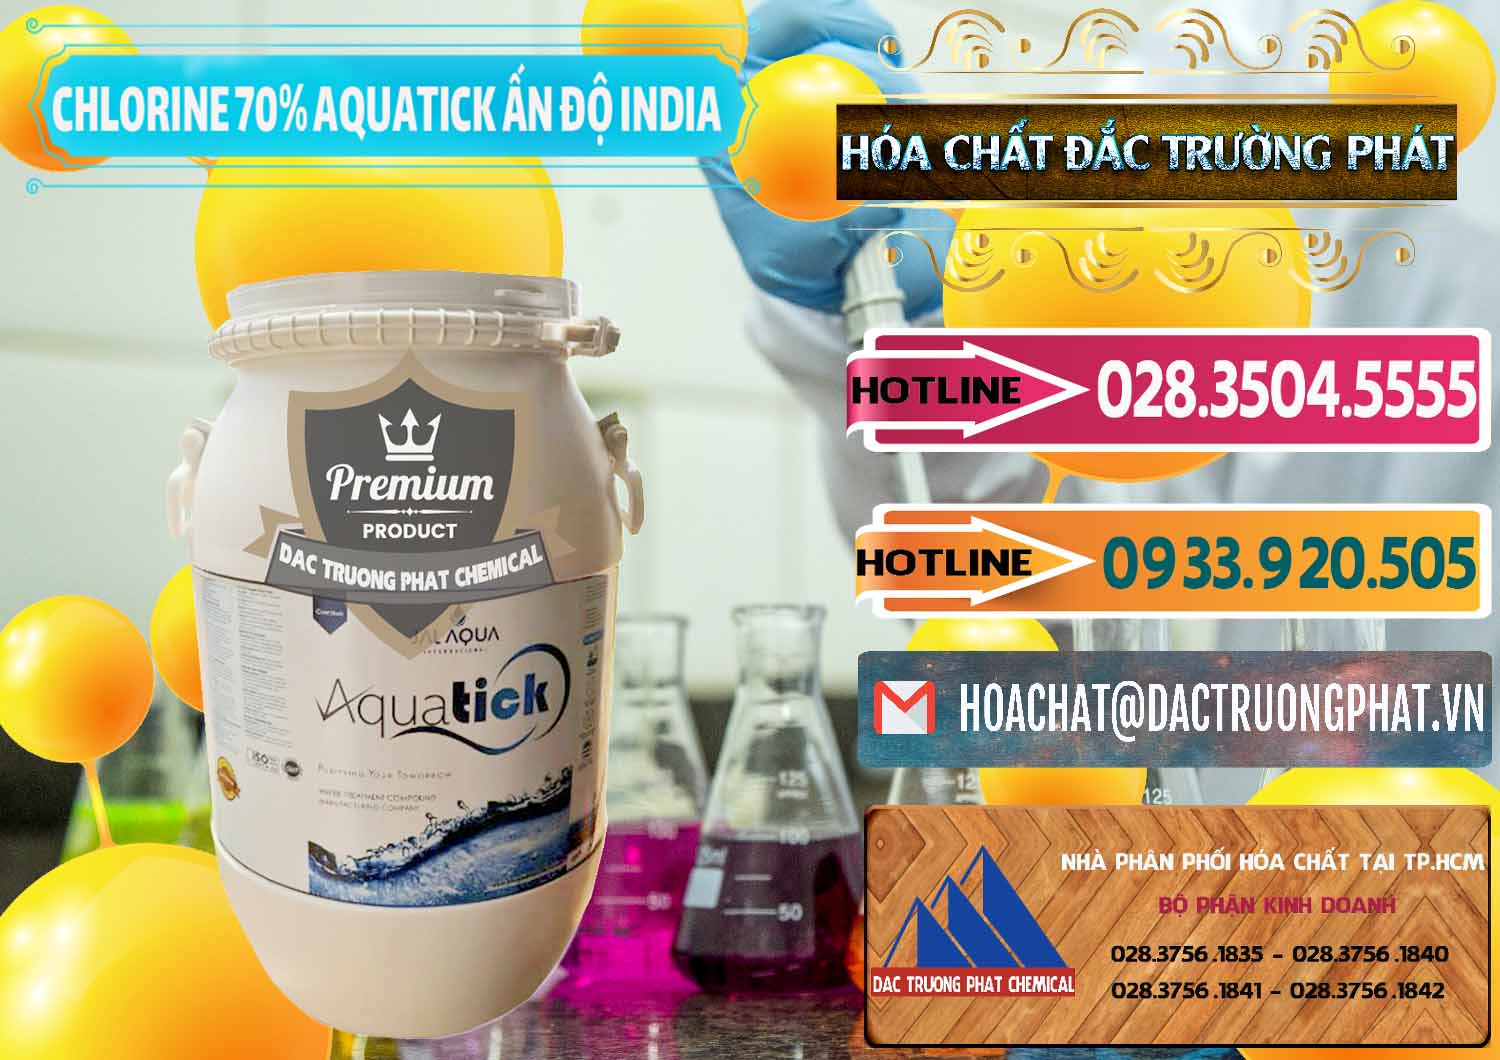 Chuyên phân phối - bán Chlorine – Clorin 70% Aquatick Jal Aqua Ấn Độ India - 0215 - Phân phối và cung cấp hóa chất tại TP.HCM - dactruongphat.vn